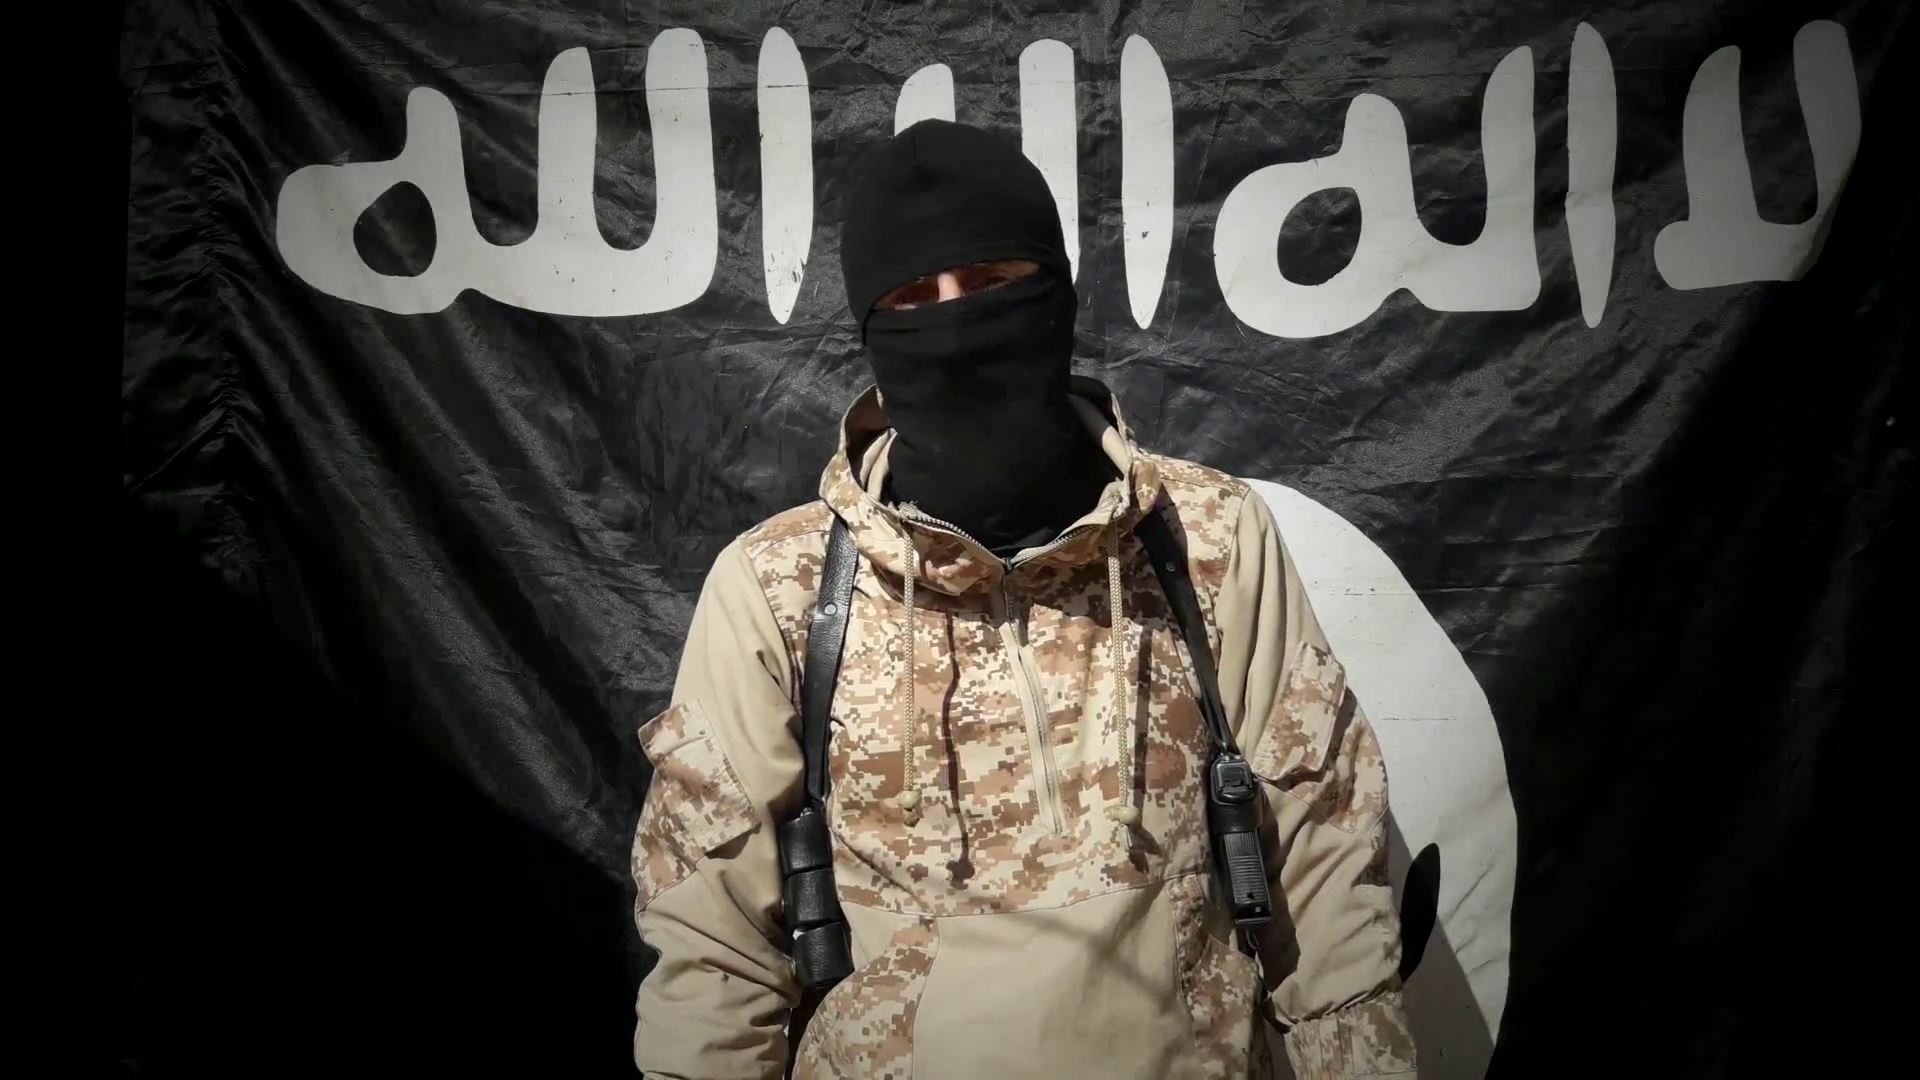 Тг канал игил. Муджахиды Исламского государства. Одежда террористов. Флаг ИГИЛ.